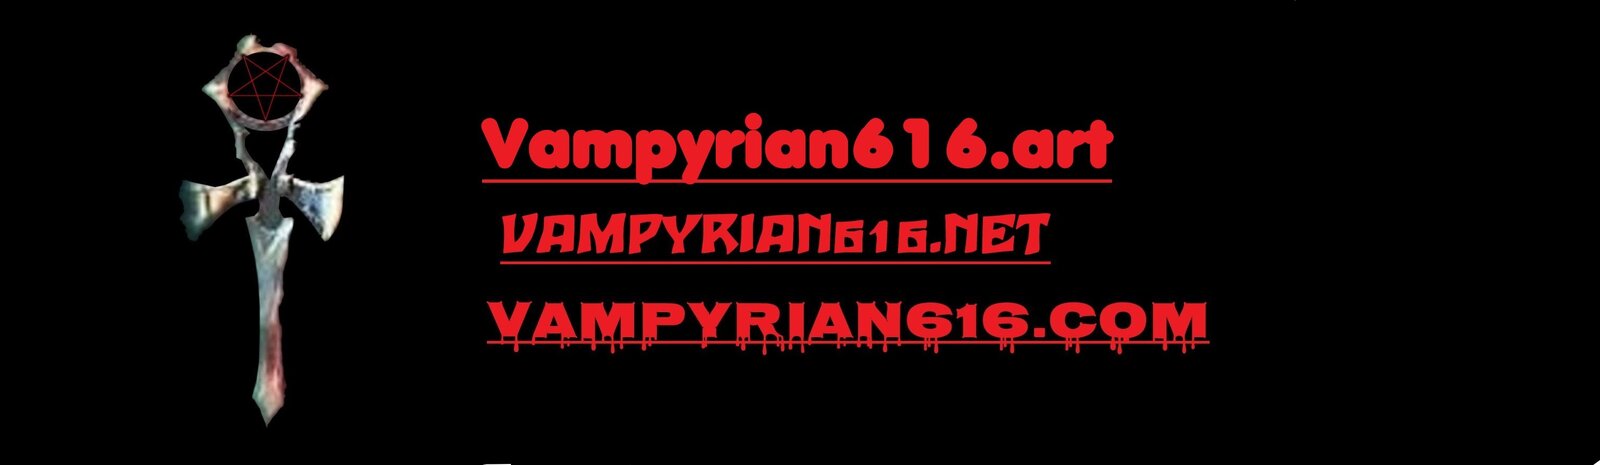 - AA A Vampyrian616 NEW banner.jpg